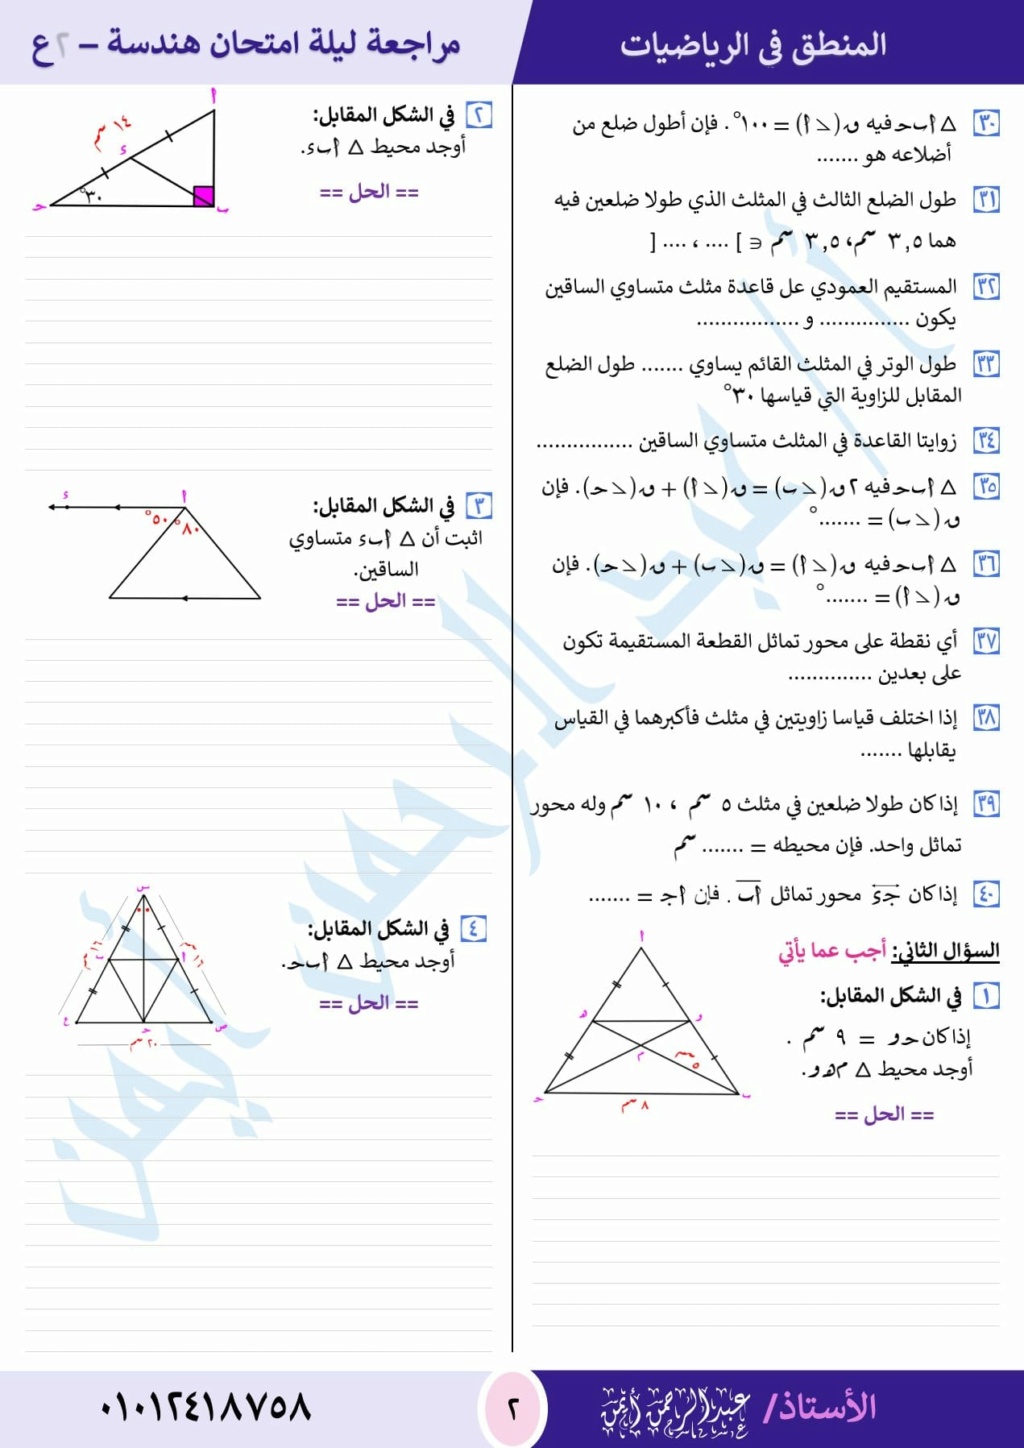 مراجعة الهندسة للصف الثانى الاعدادى ترم اول أ. عبد الرحمن أيمن 2897